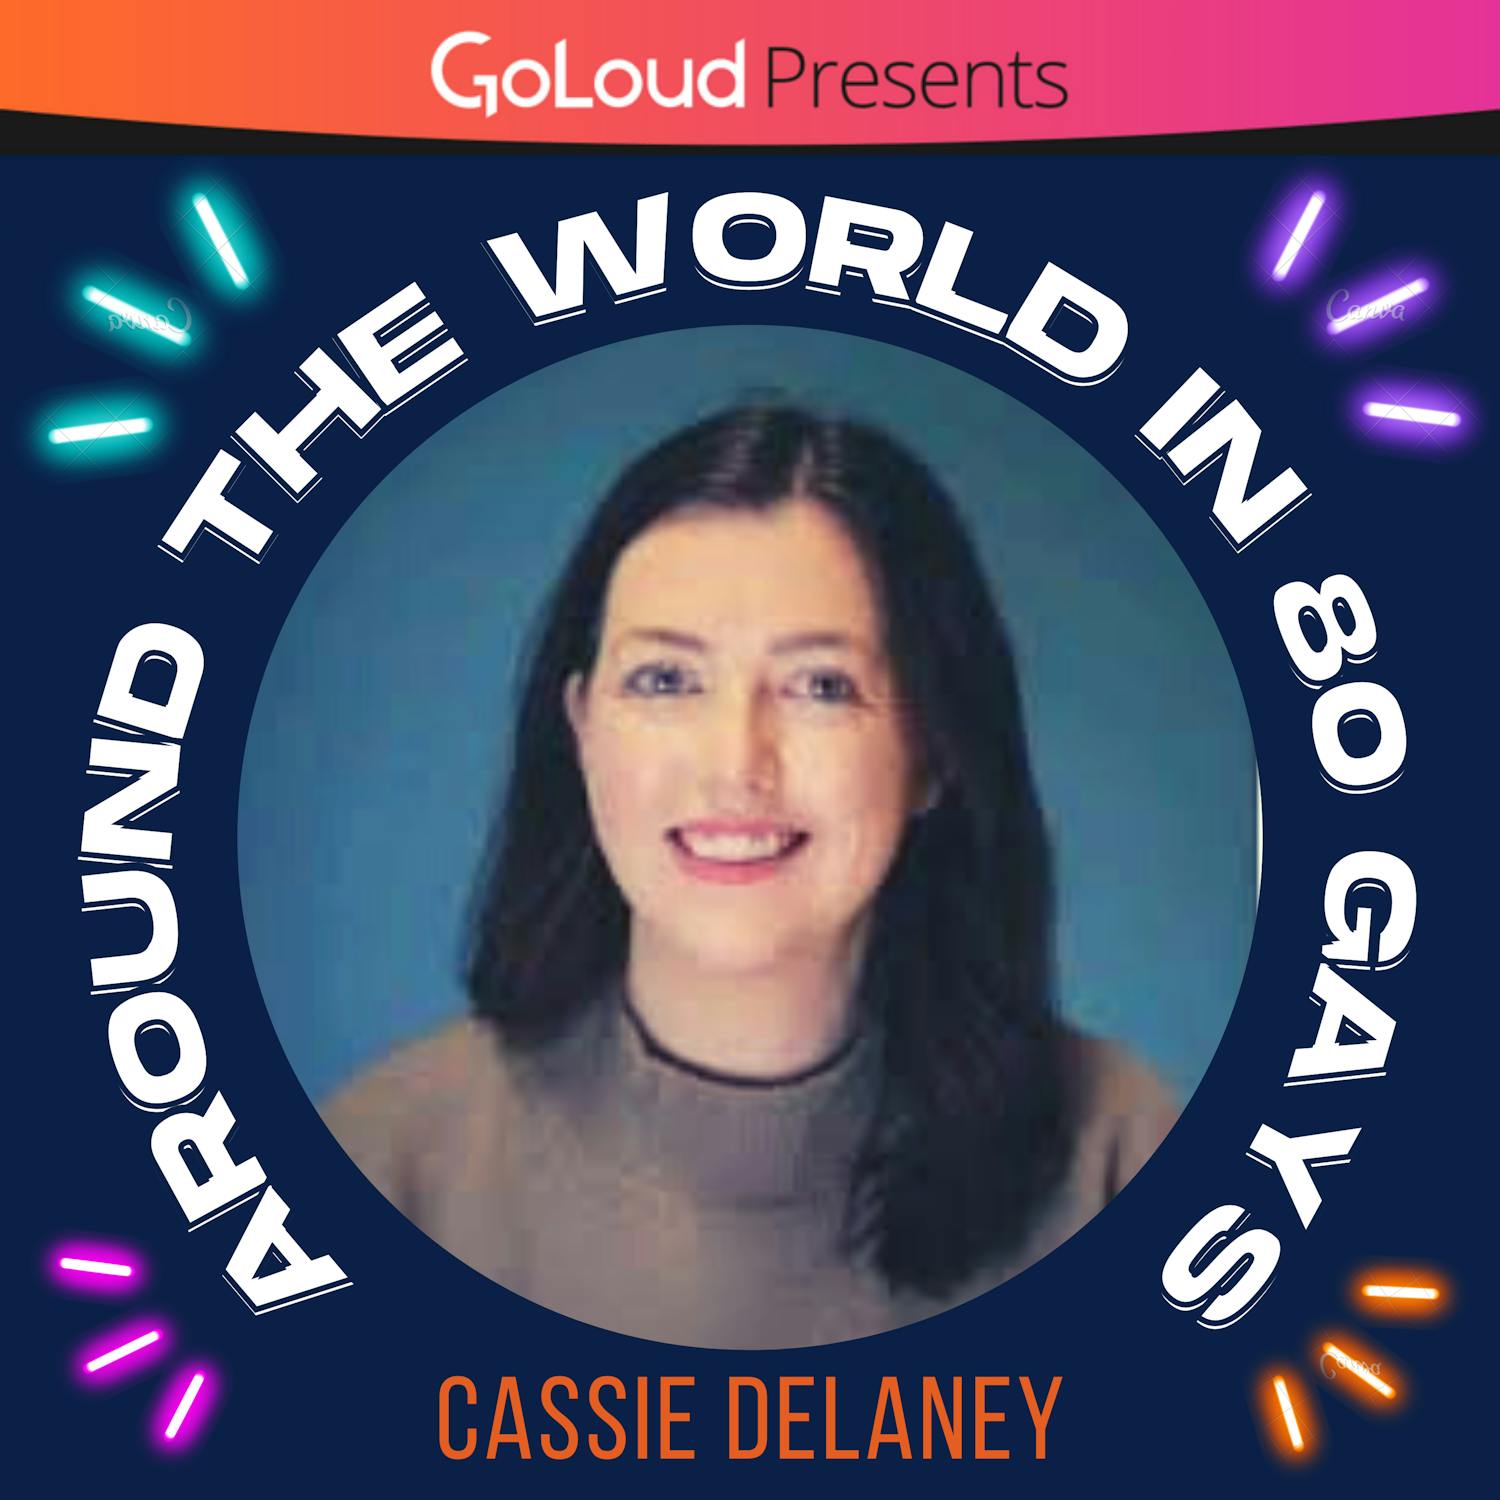 Around the World in 80 Gays meets Cassie Delaney